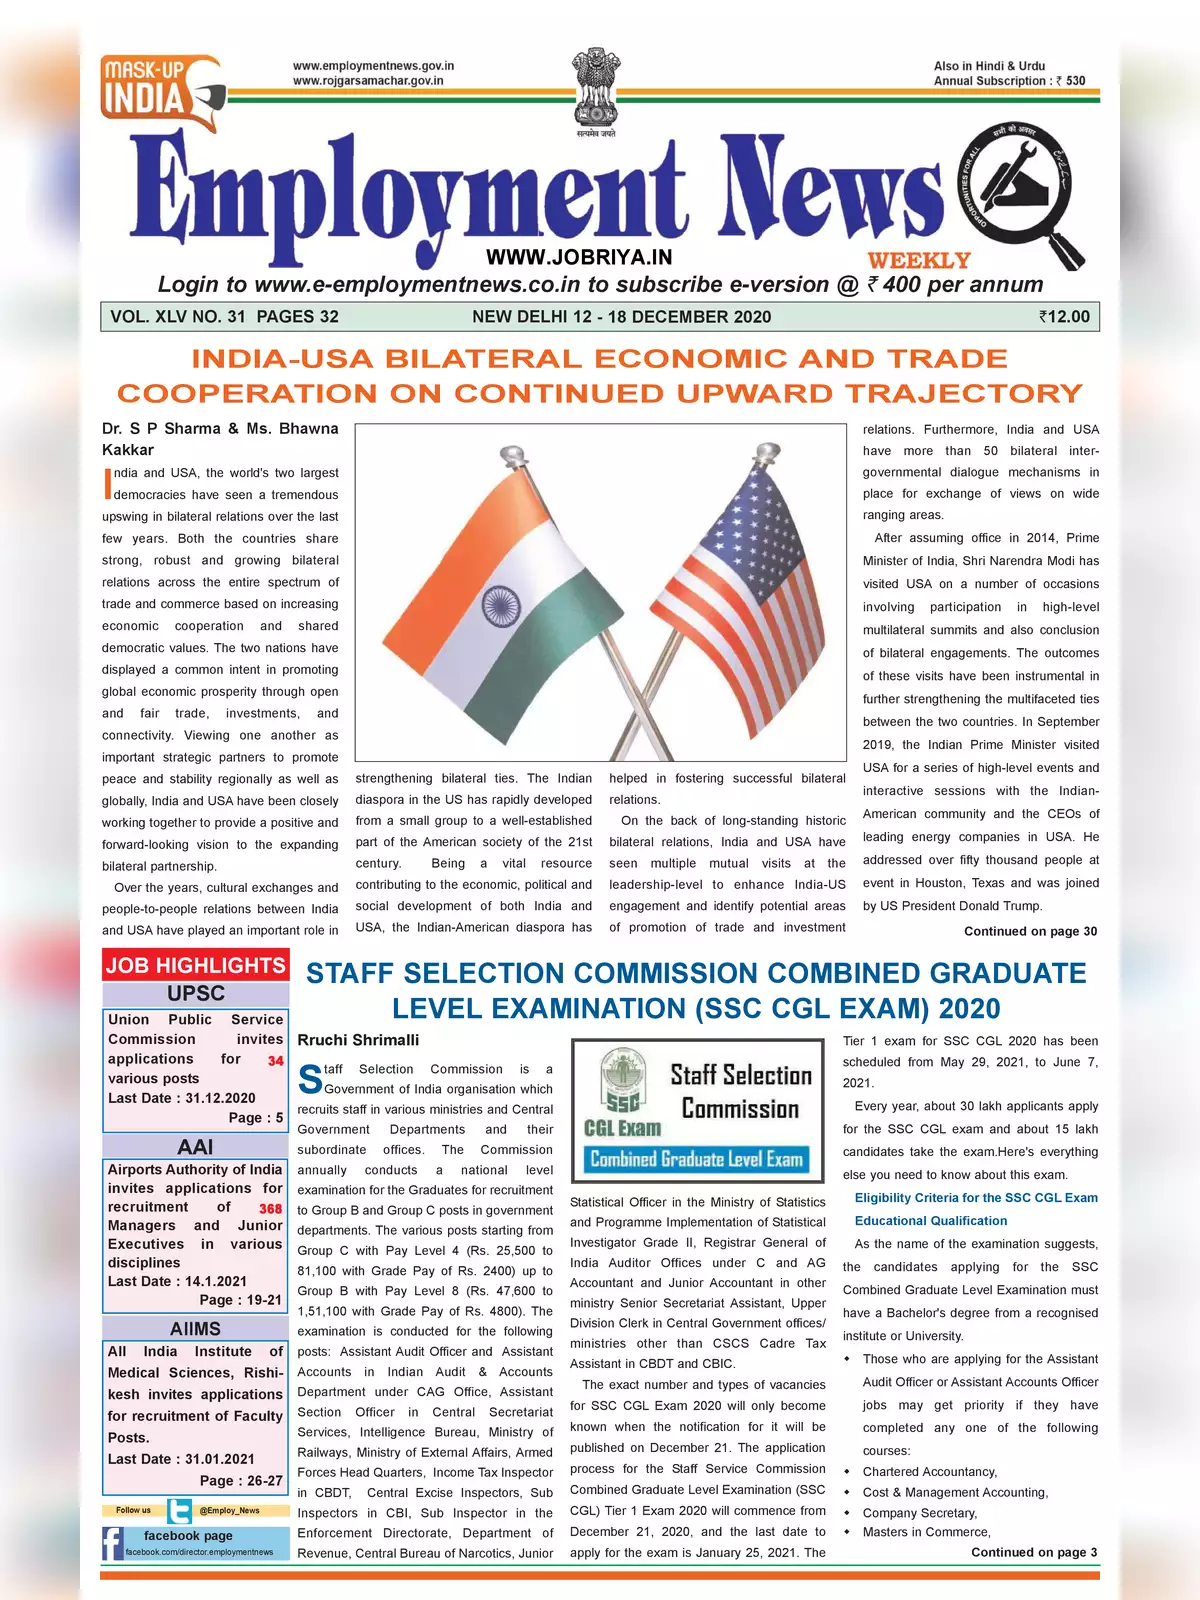 Employment Newspaper Second Week of December 2020